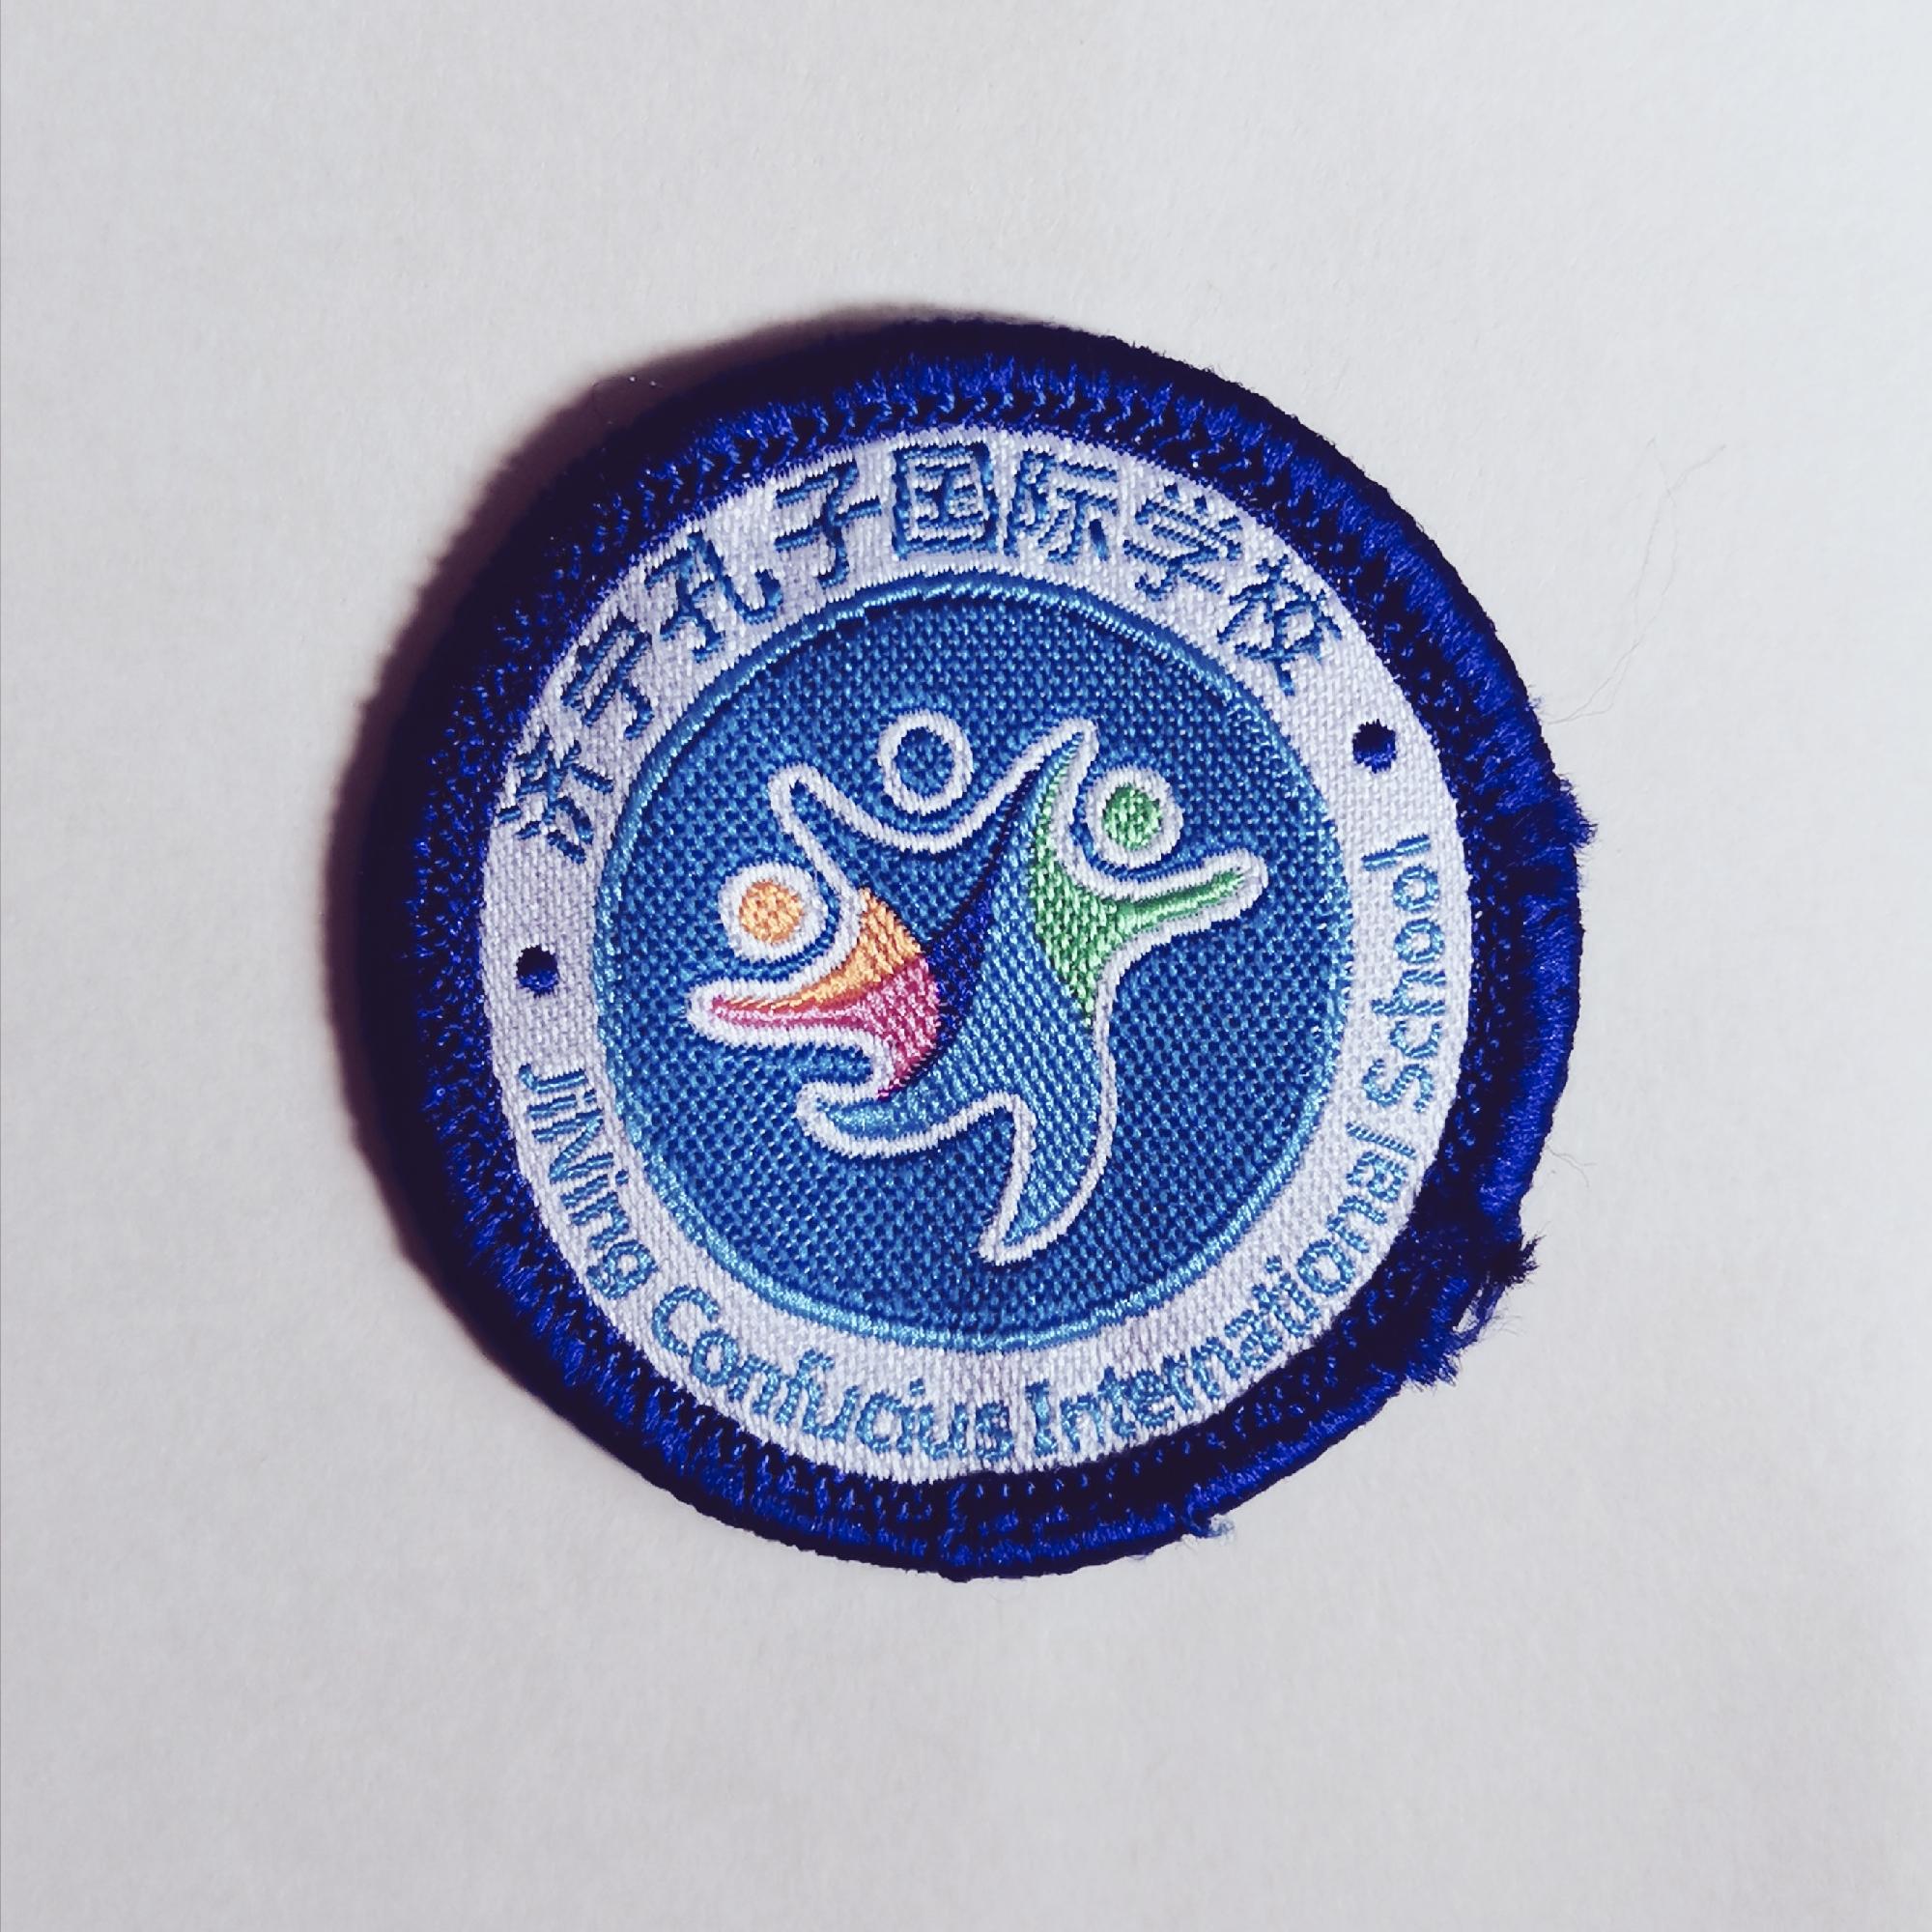 济宁孔子国际学校校徽图片